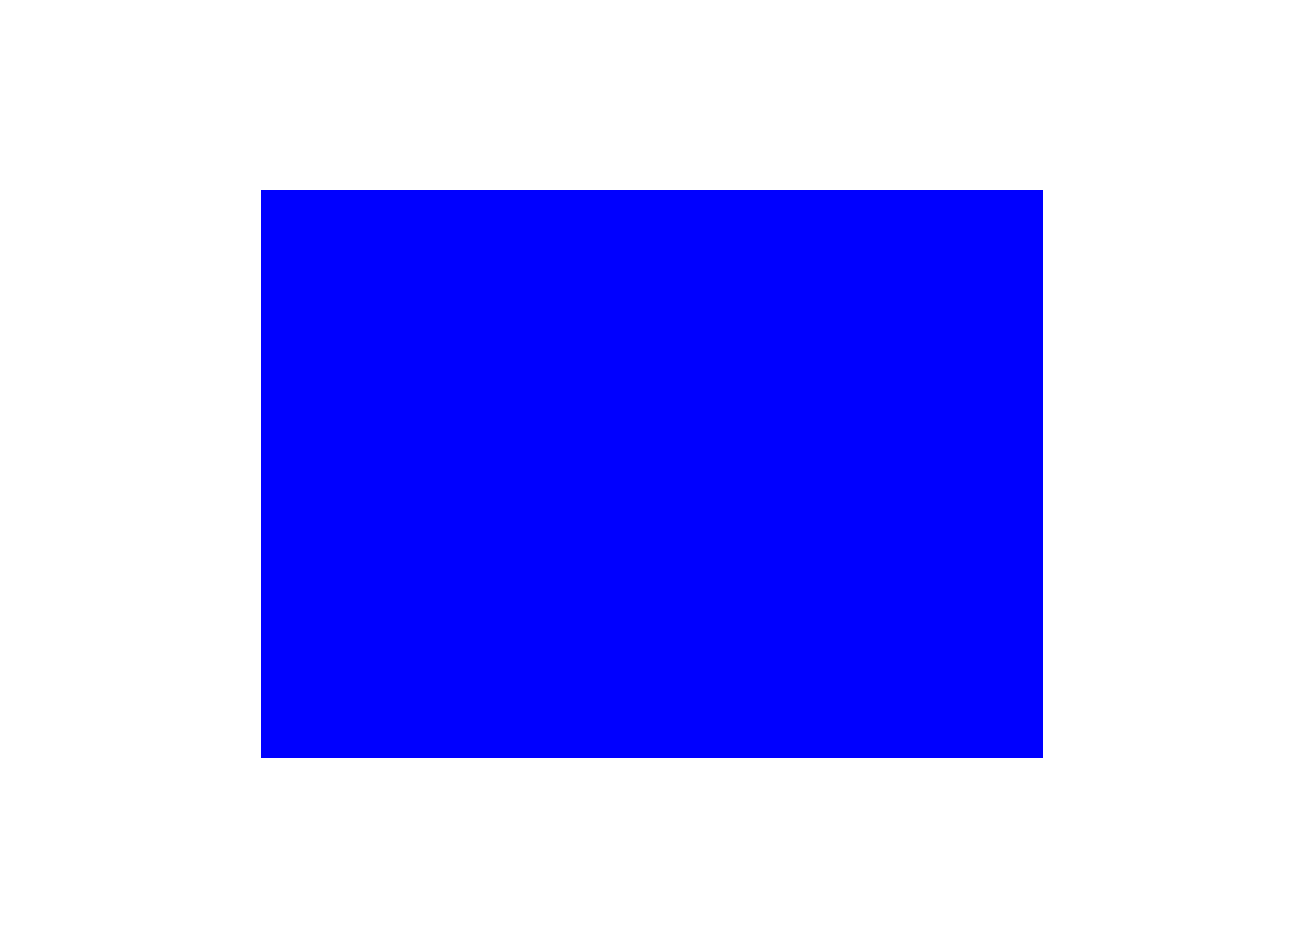 A <a href="http://ebaum.it/1wXyKjf" target="_blank">website</a> showcasing a blue box.